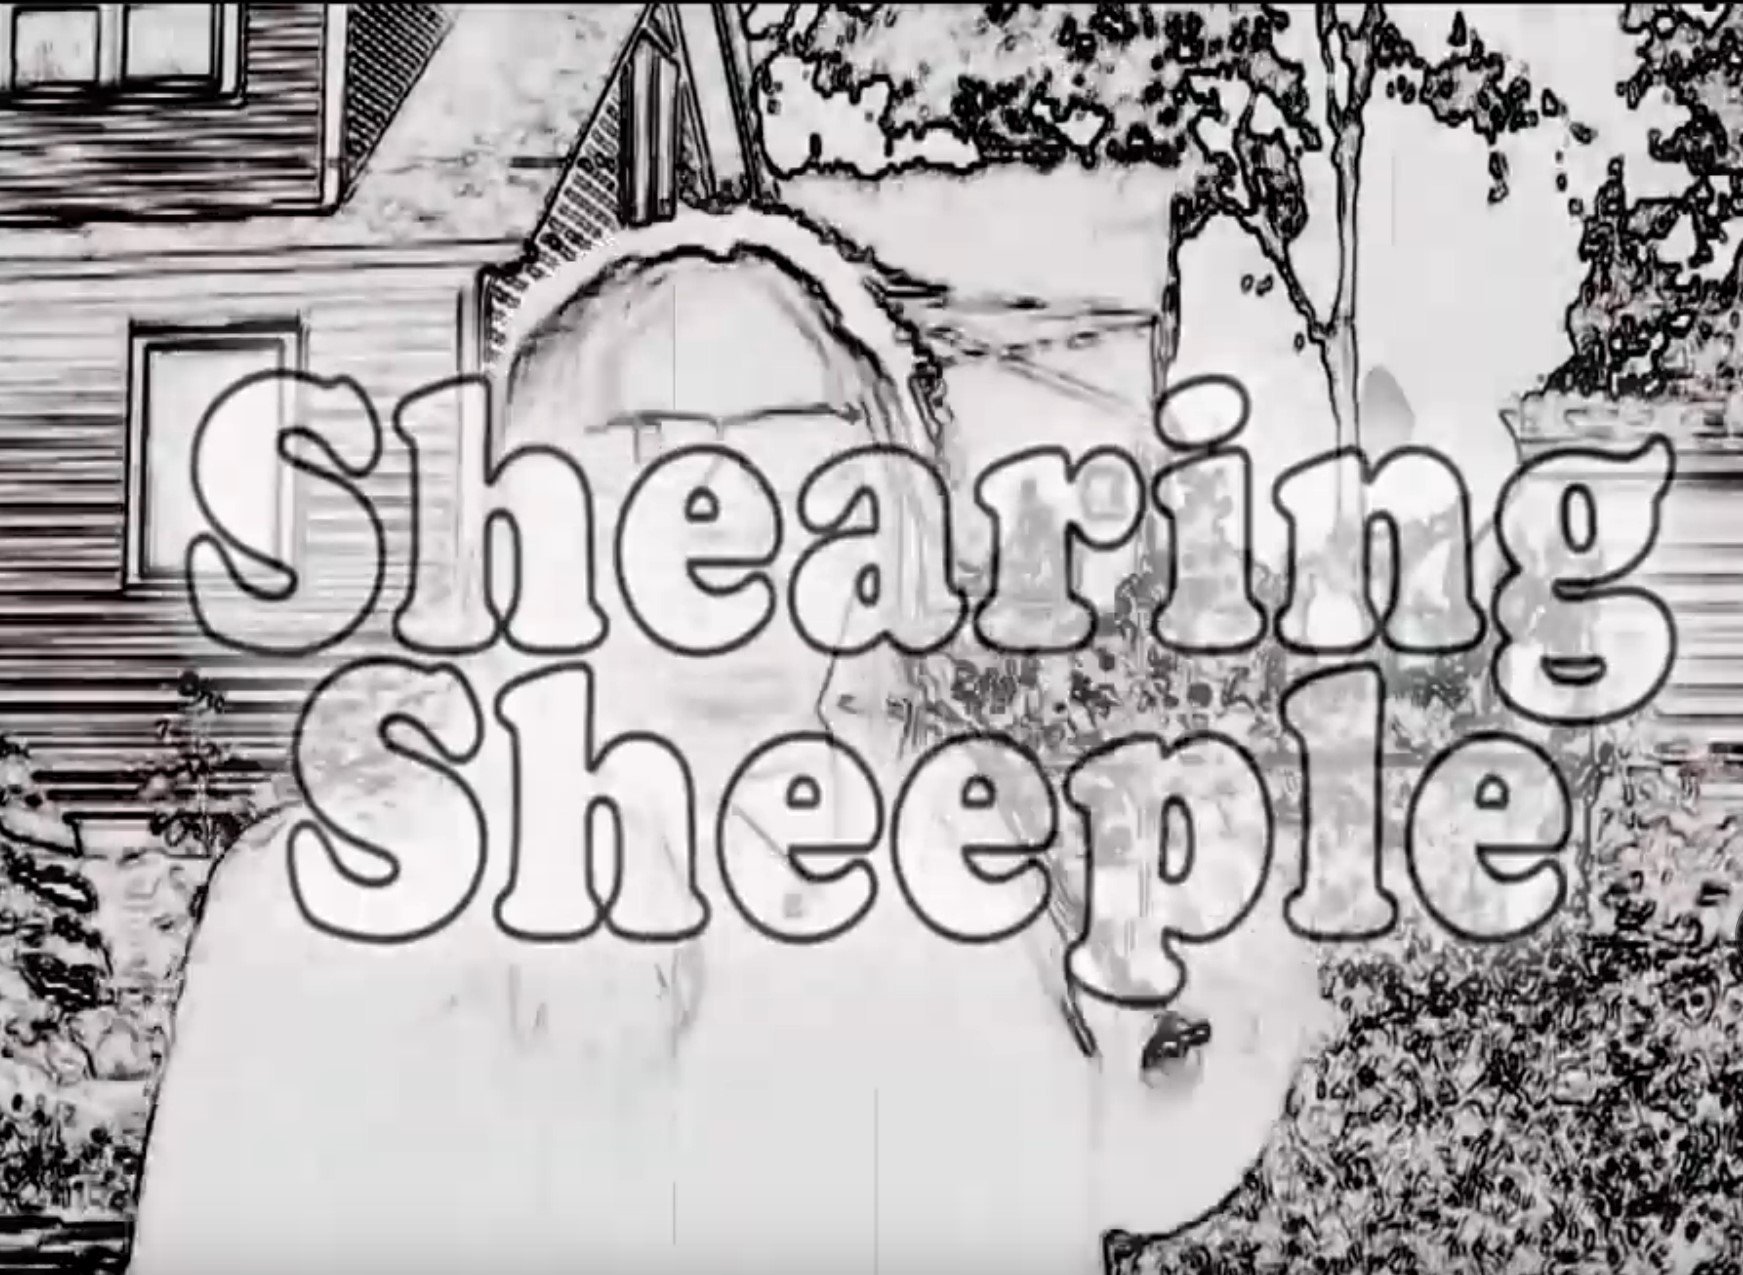 Shearing “Sheeple”